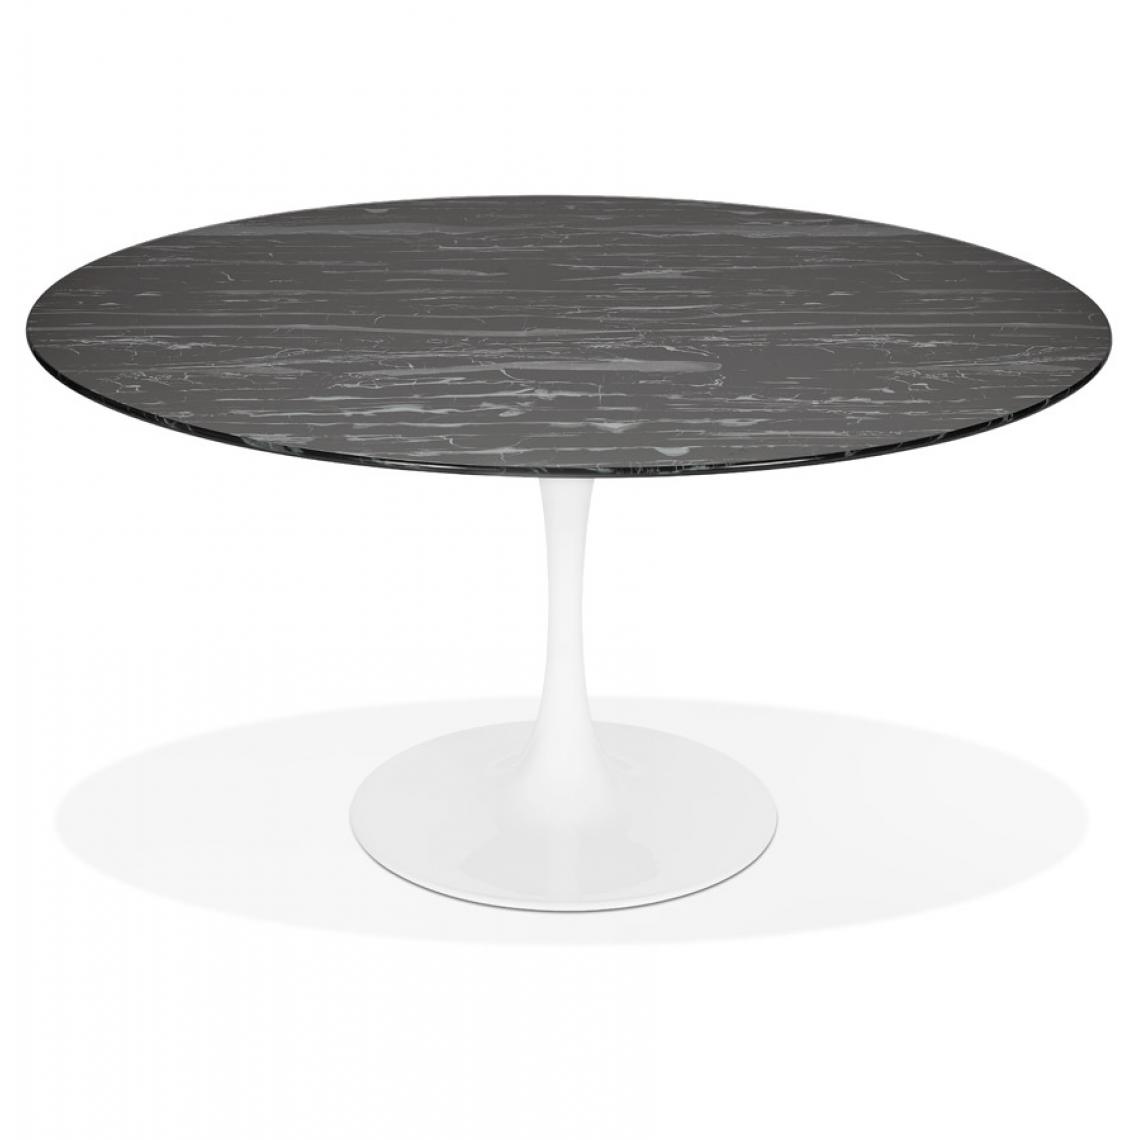 Alterego - Table à manger 'SHADOW' ronde en verre noir effet marbre et pied central blanc - Ø 140 CM - Tables à manger